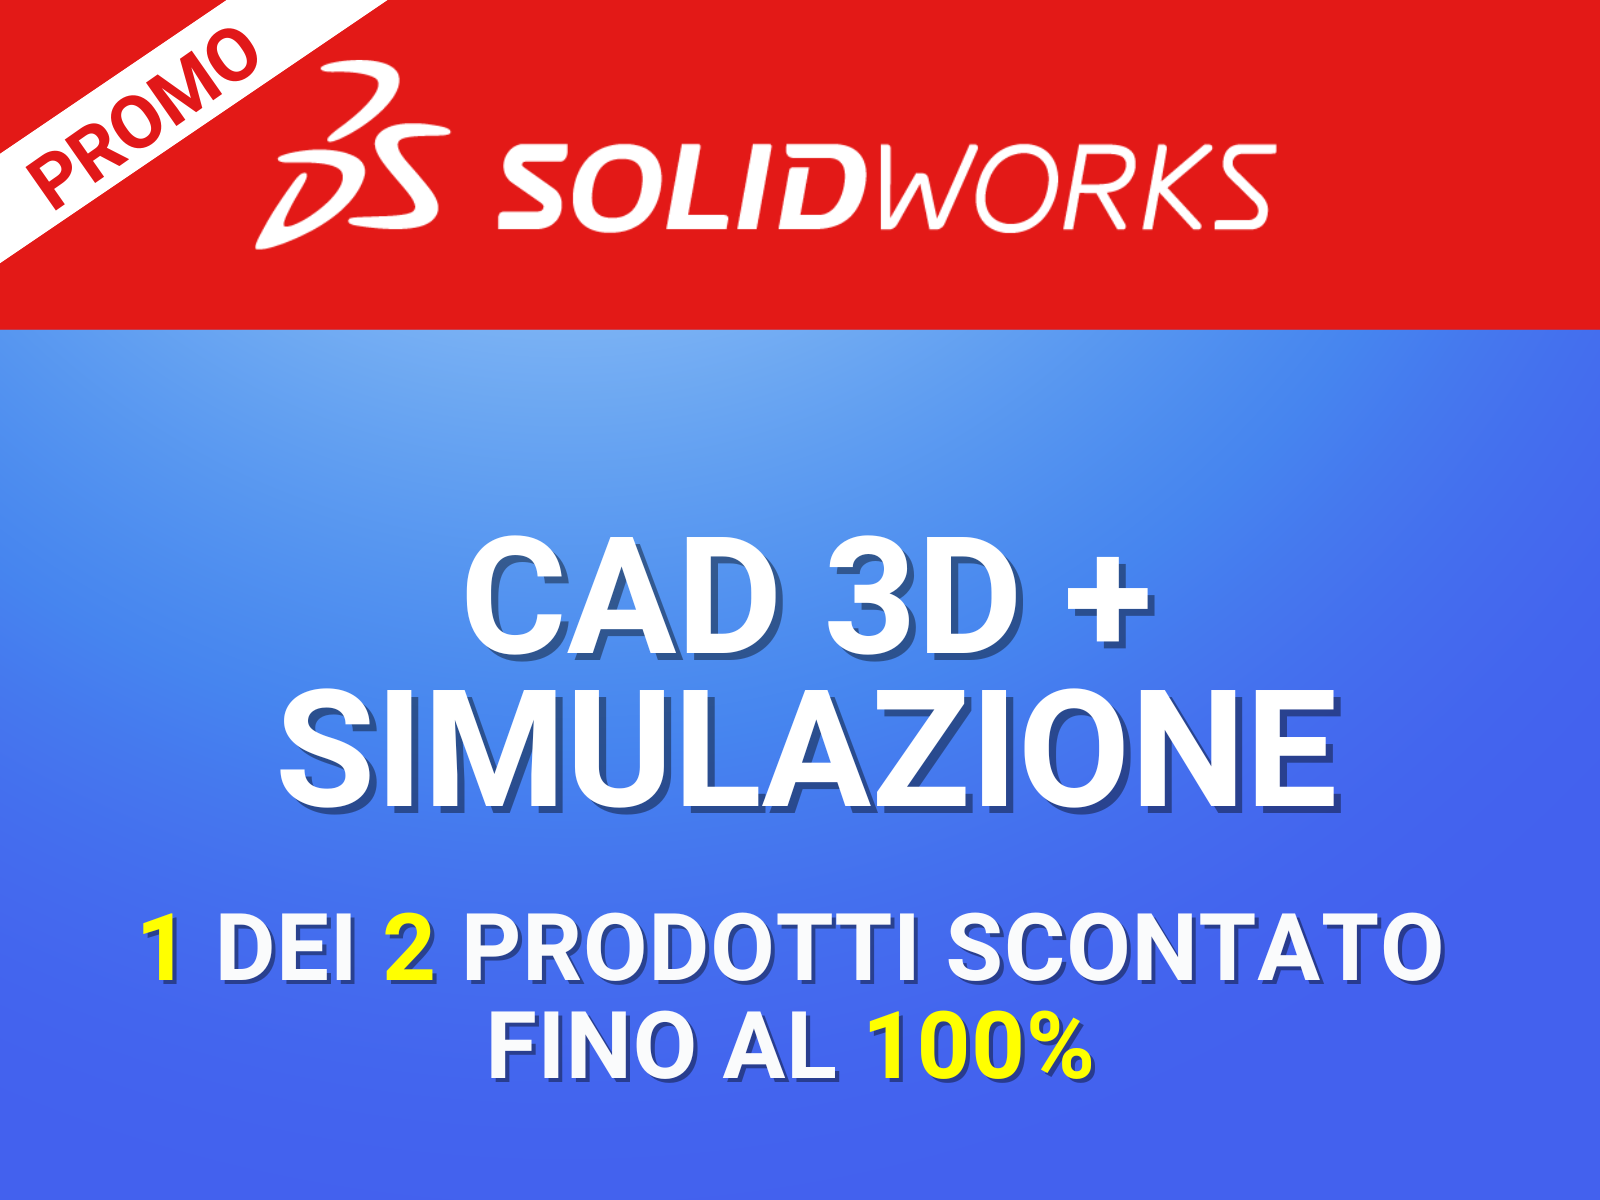 CAD3D SIMULAZIONE SOLIDWORKS PROMO